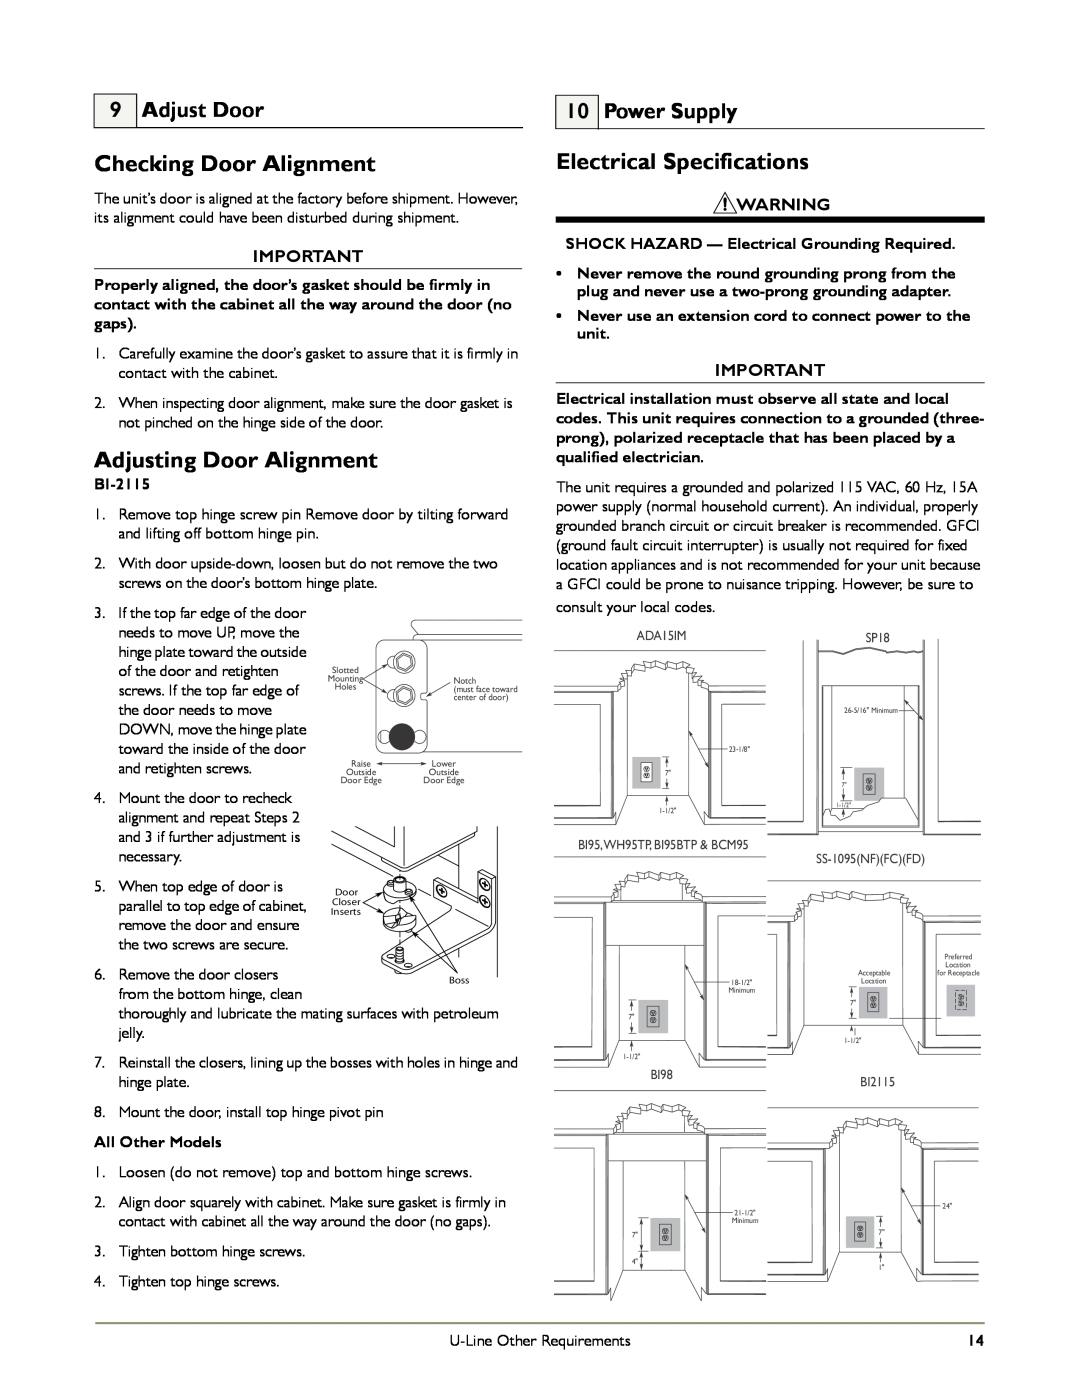 U-Line WH95, B198 Checking Door Alignment, Adjusting Door Alignment, Electrical Specifications, Adjust Door, Power Supply 